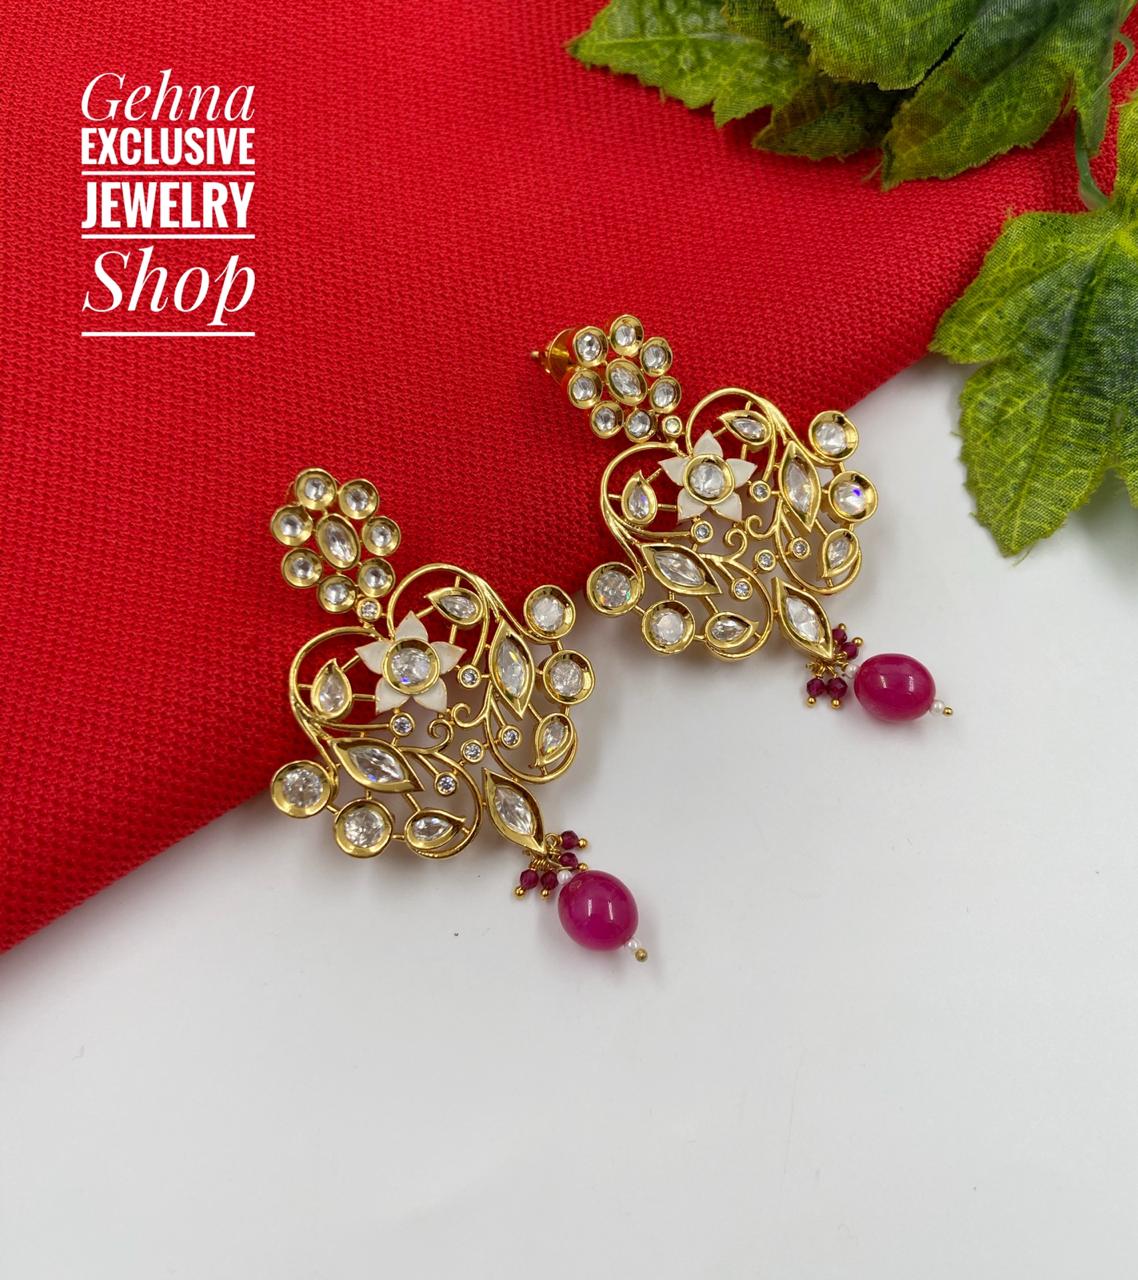 Earring Earrings Women Gold Color Geometric | Simple Geometric Drop Earrings  - Dangle Earrings - Aliexpress